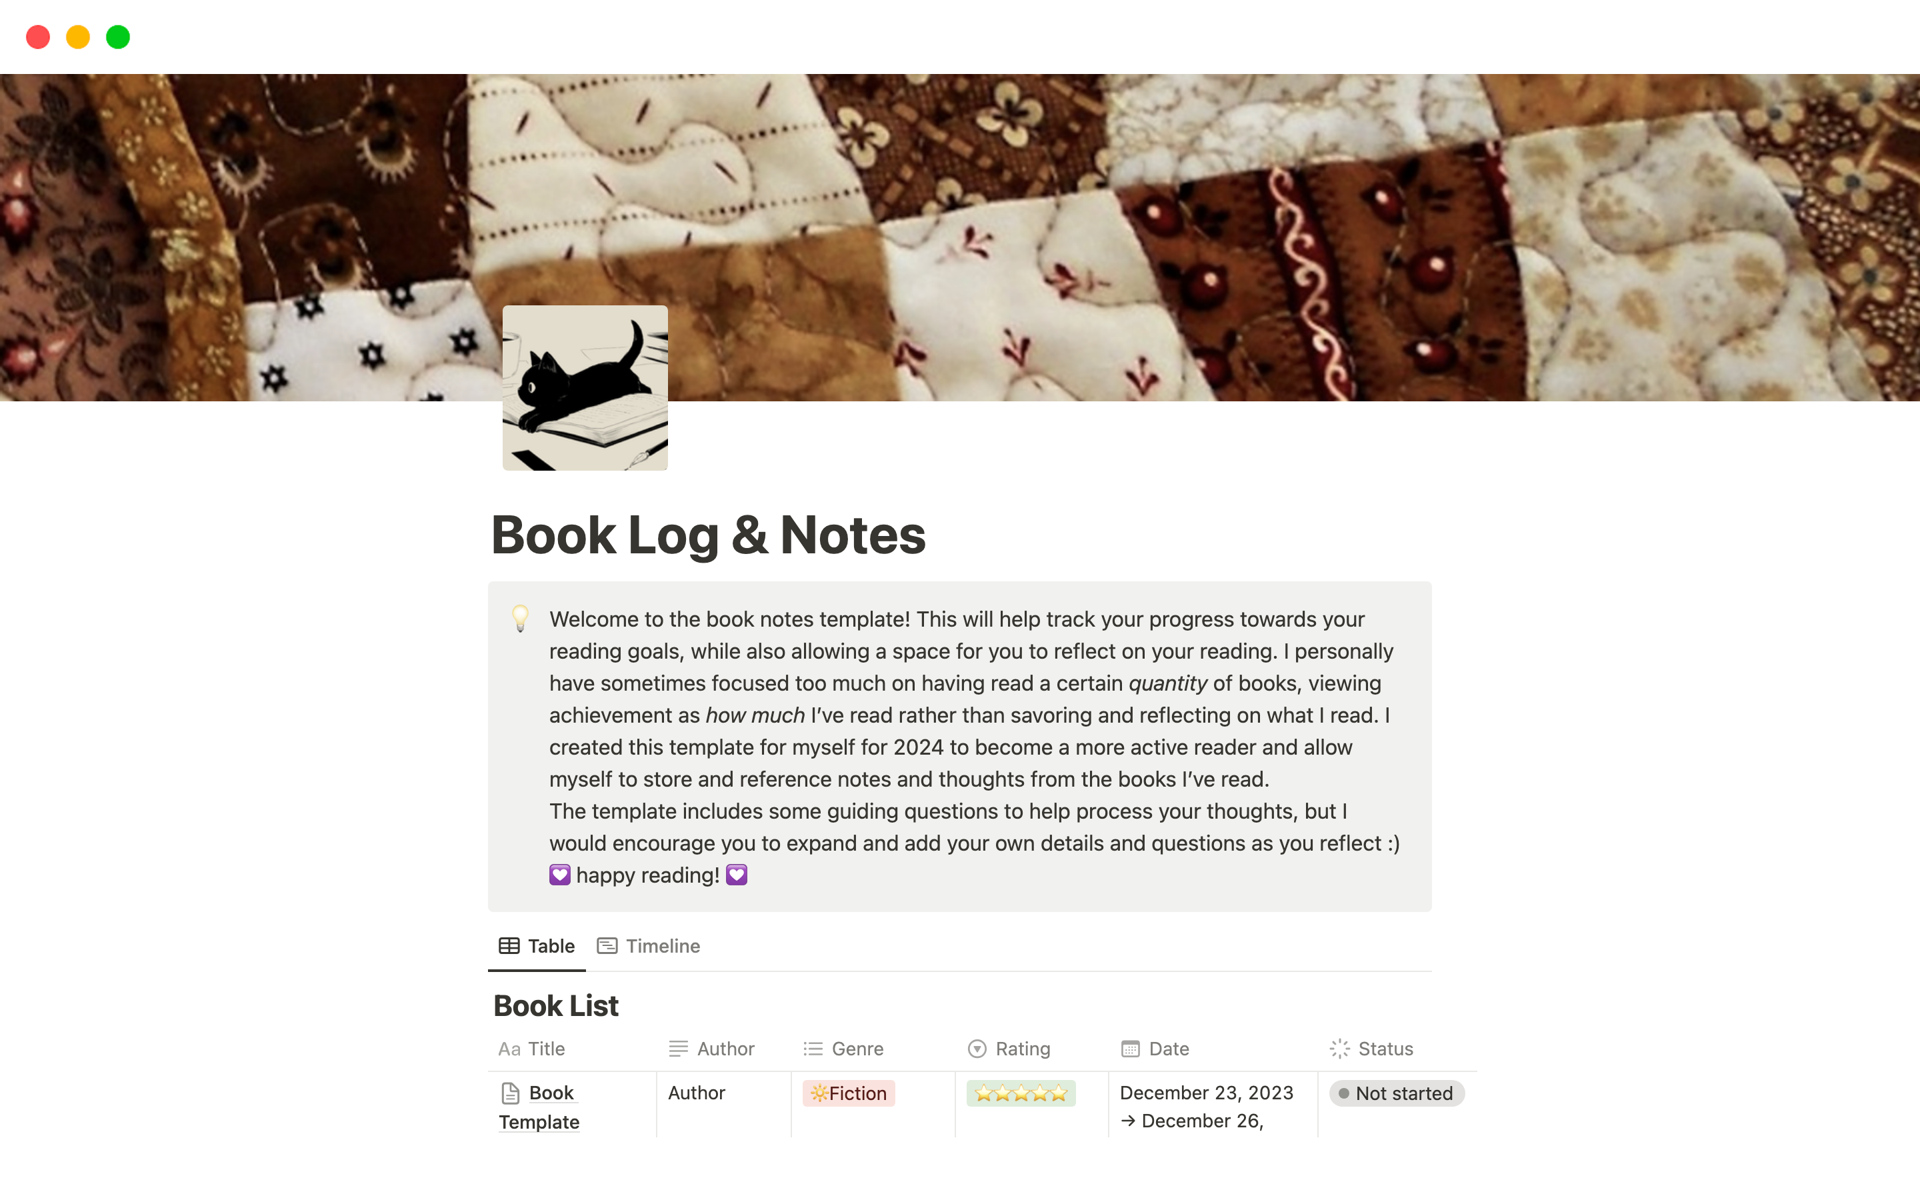 Uma prévia do modelo para Book Log & Notes